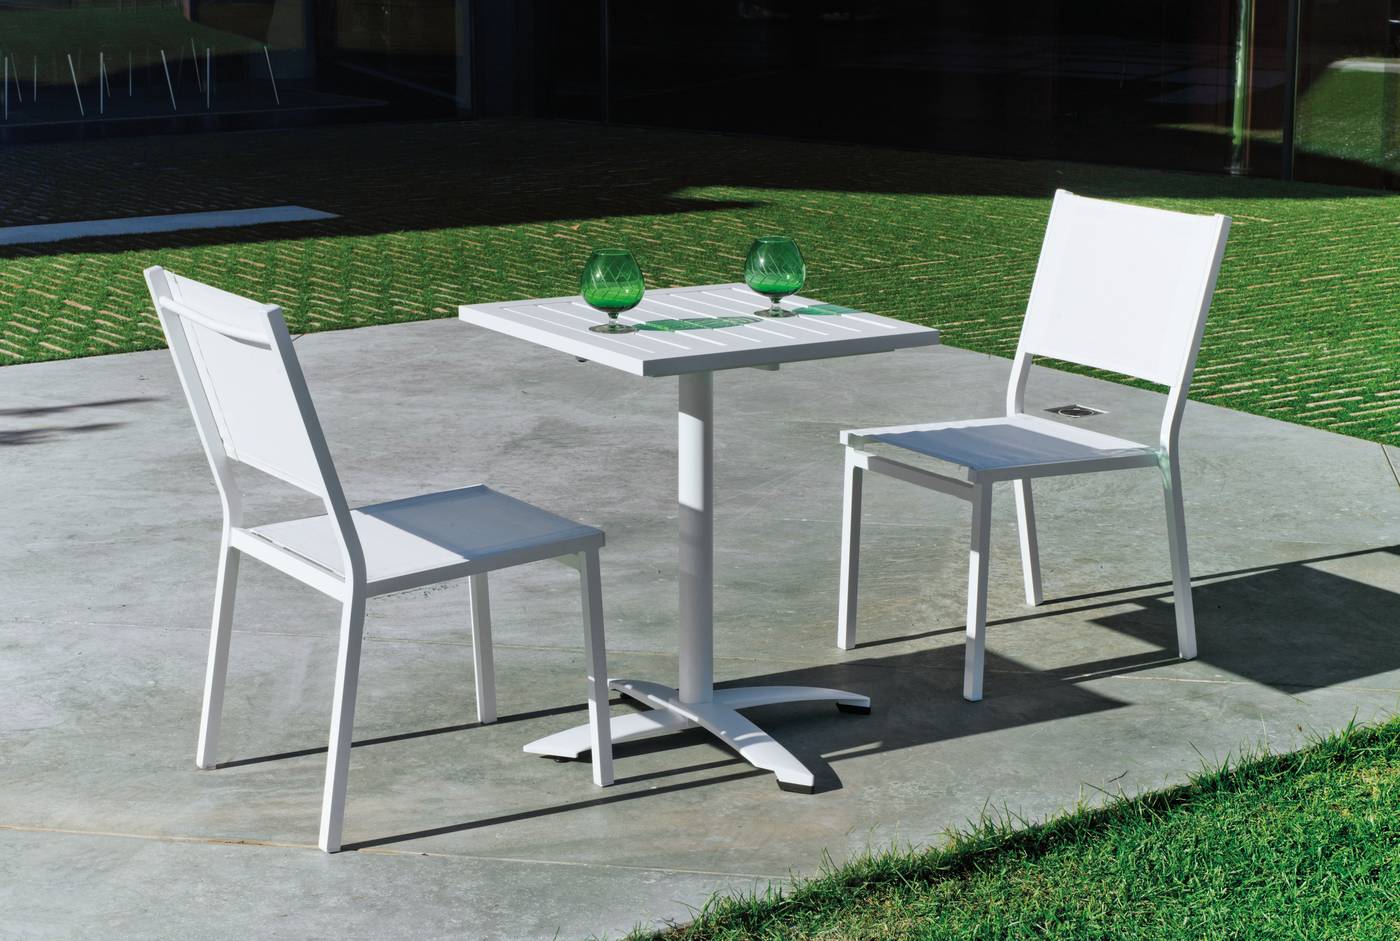 Mesa cuadrada 60 cm de aluminio,  con tablero lamas de aluminio + 2 sillas aluminio y textilen. Disponible en varios colores: blanco, antracita, champagne, plata o marrón.